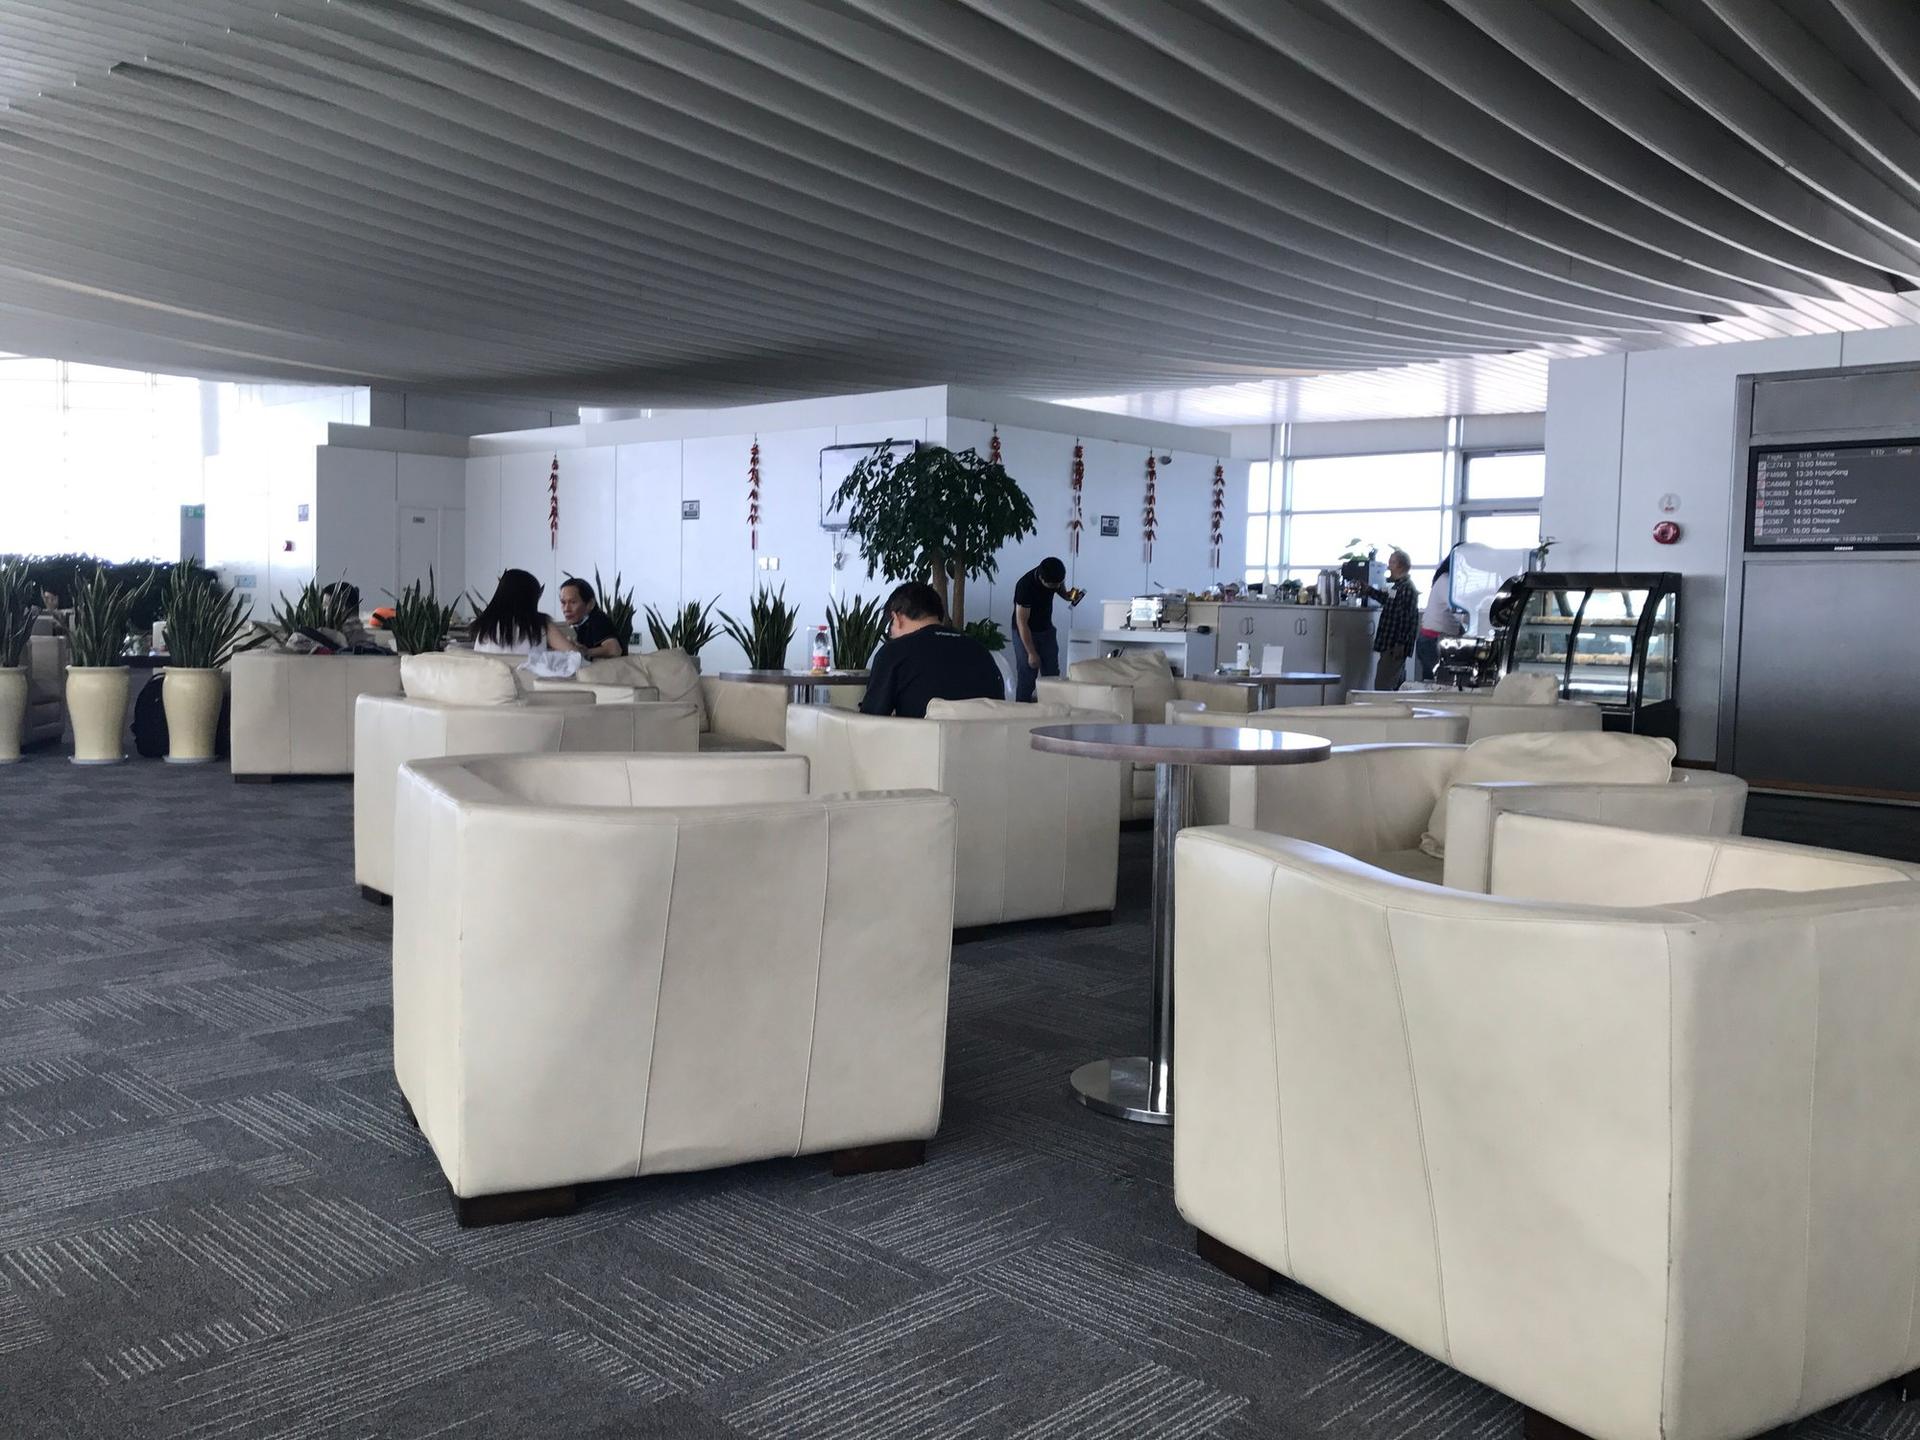 Hangzhou Xiaoshan Airport First Class Lounge image 6 of 8